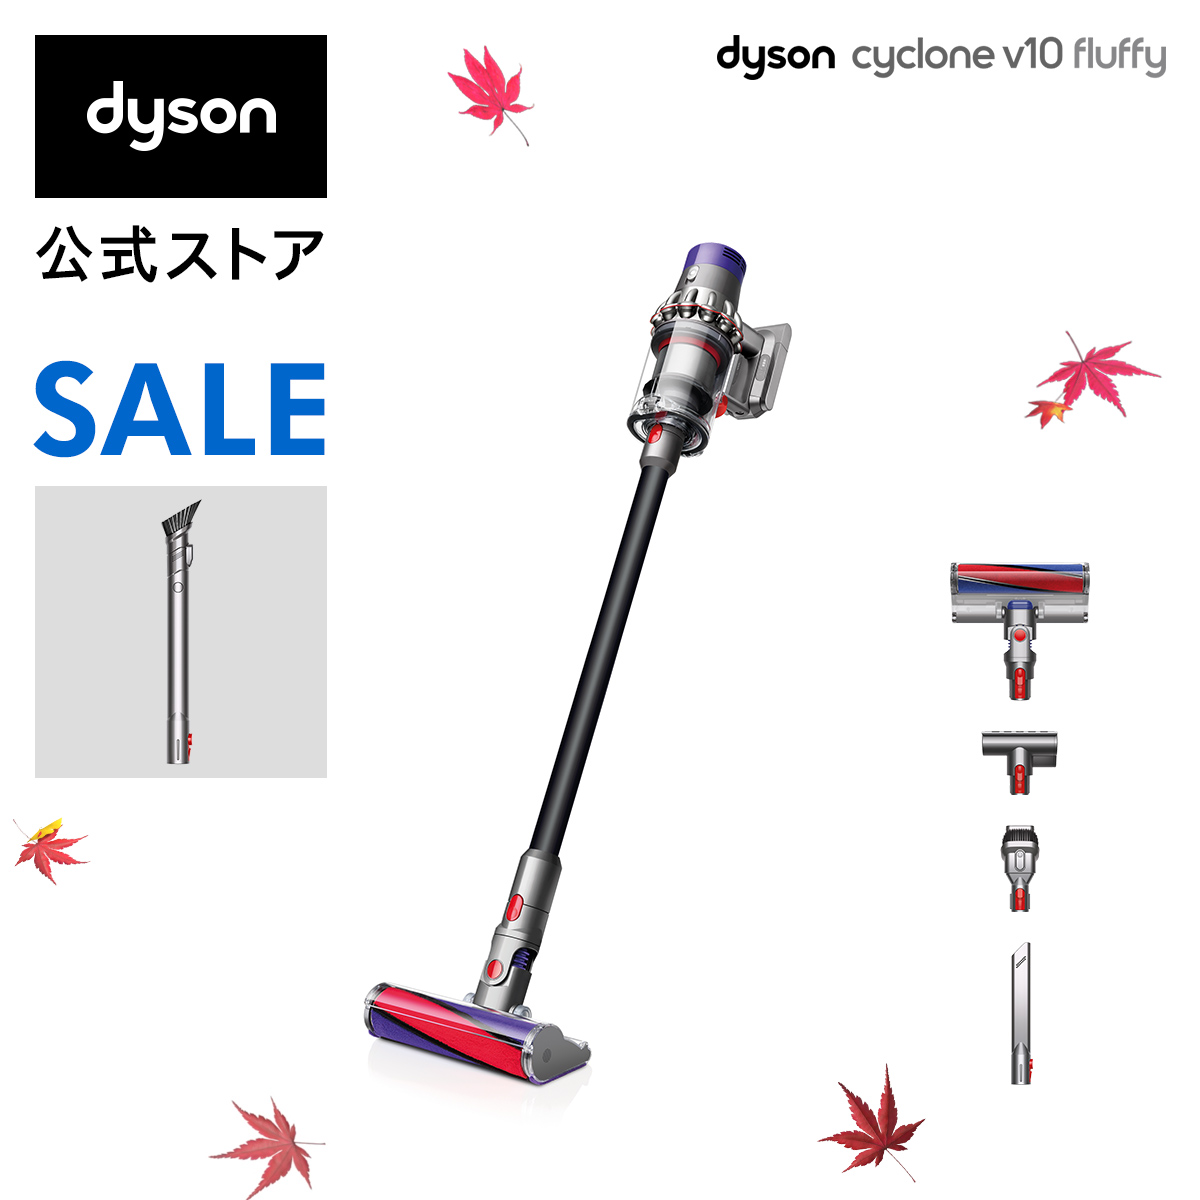 【直販限定Black Edition】Dyson Cyclone V10 Fluffy サイクロン式 コードレス掃除機SV12 FF BK